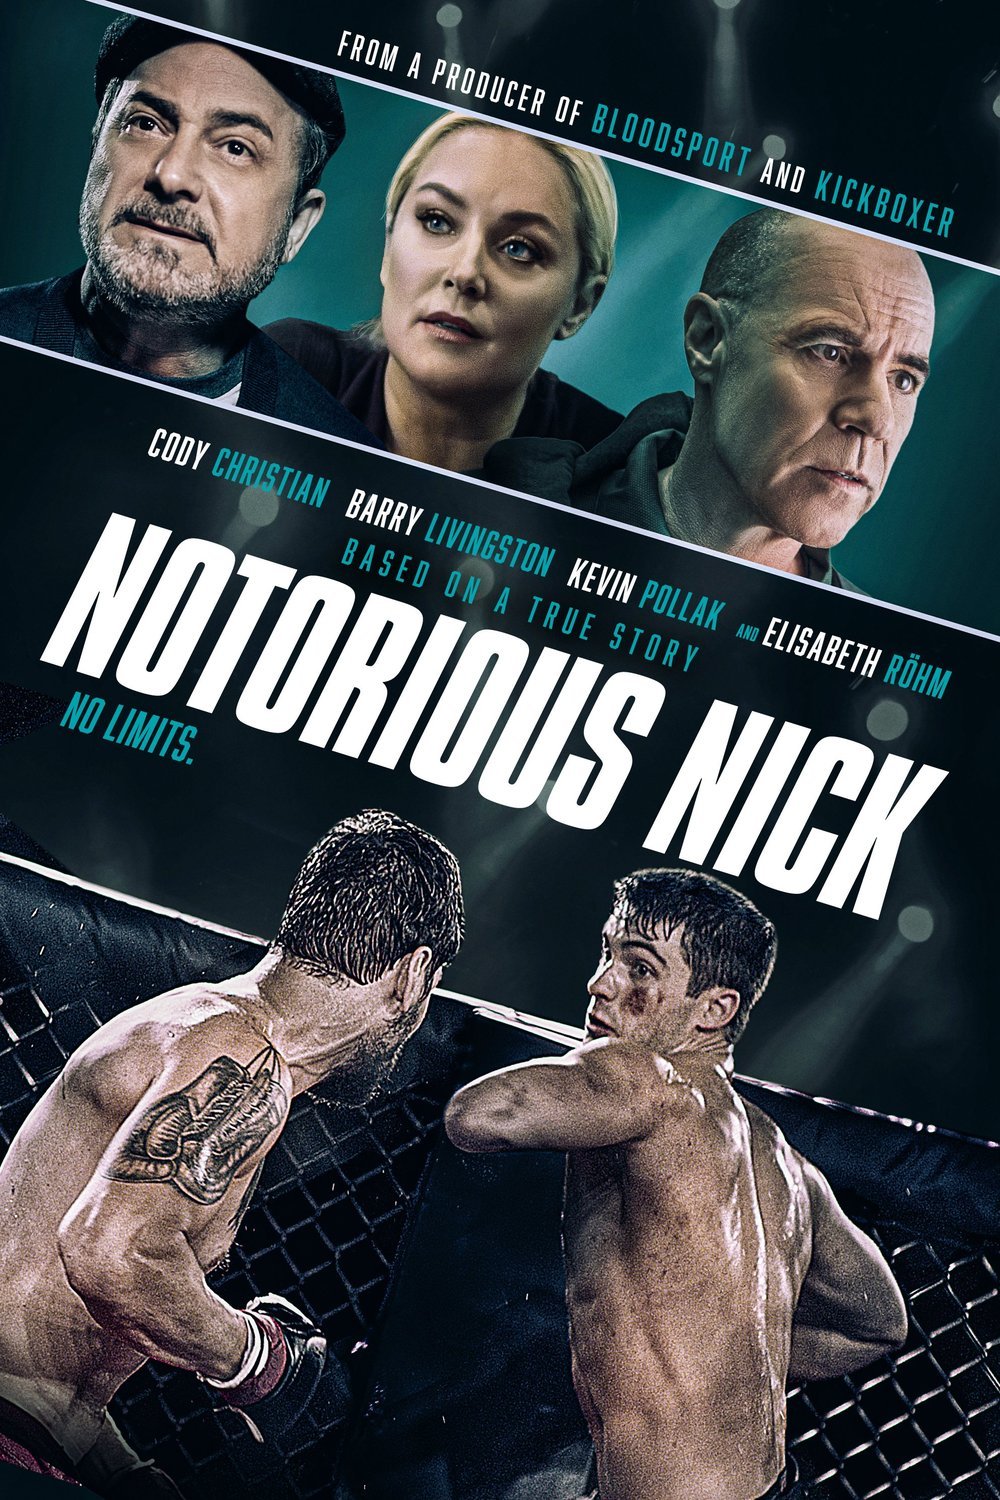 L'affiche du film Notorious Nick